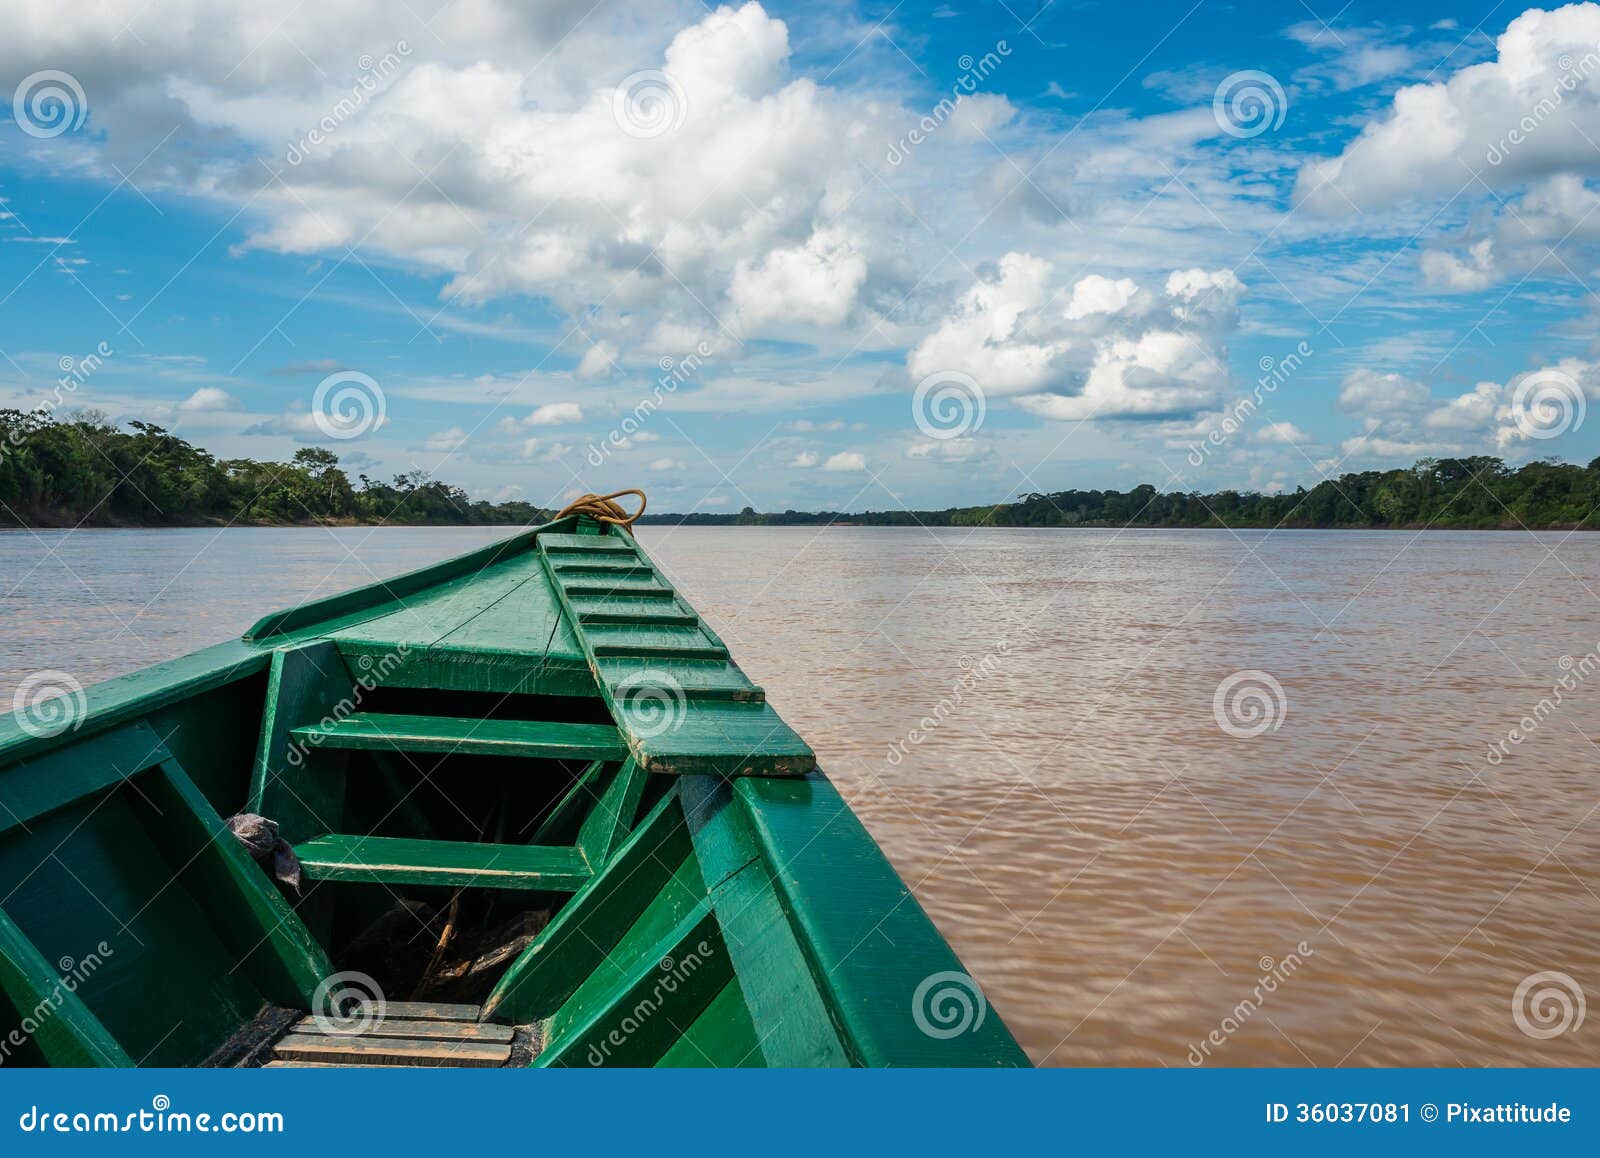 boat in the river in the peruvian amazon jungle at madre de dios peru